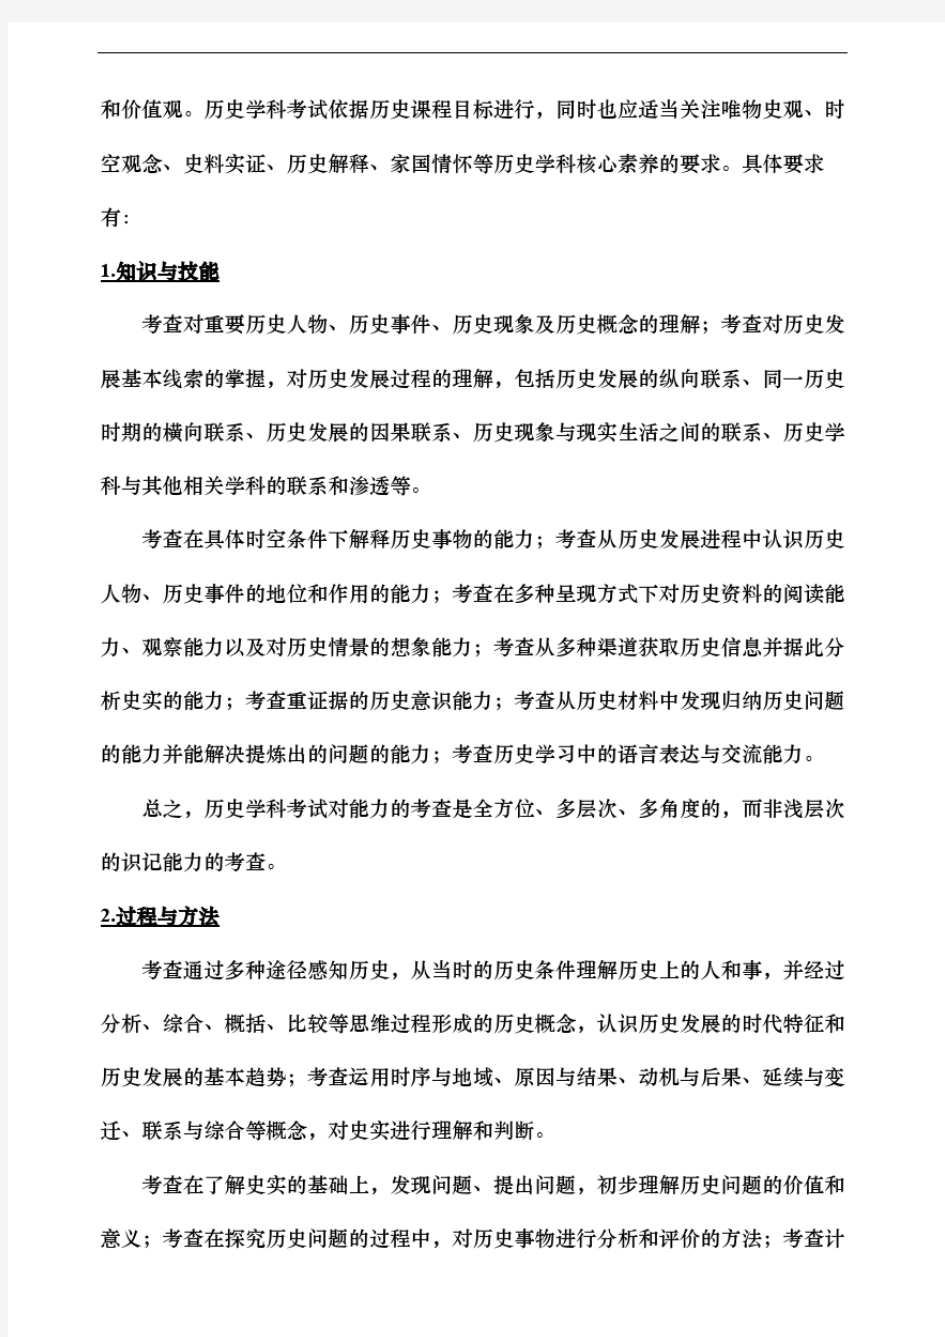 2019年河北省中考历史考试要求和考试内容